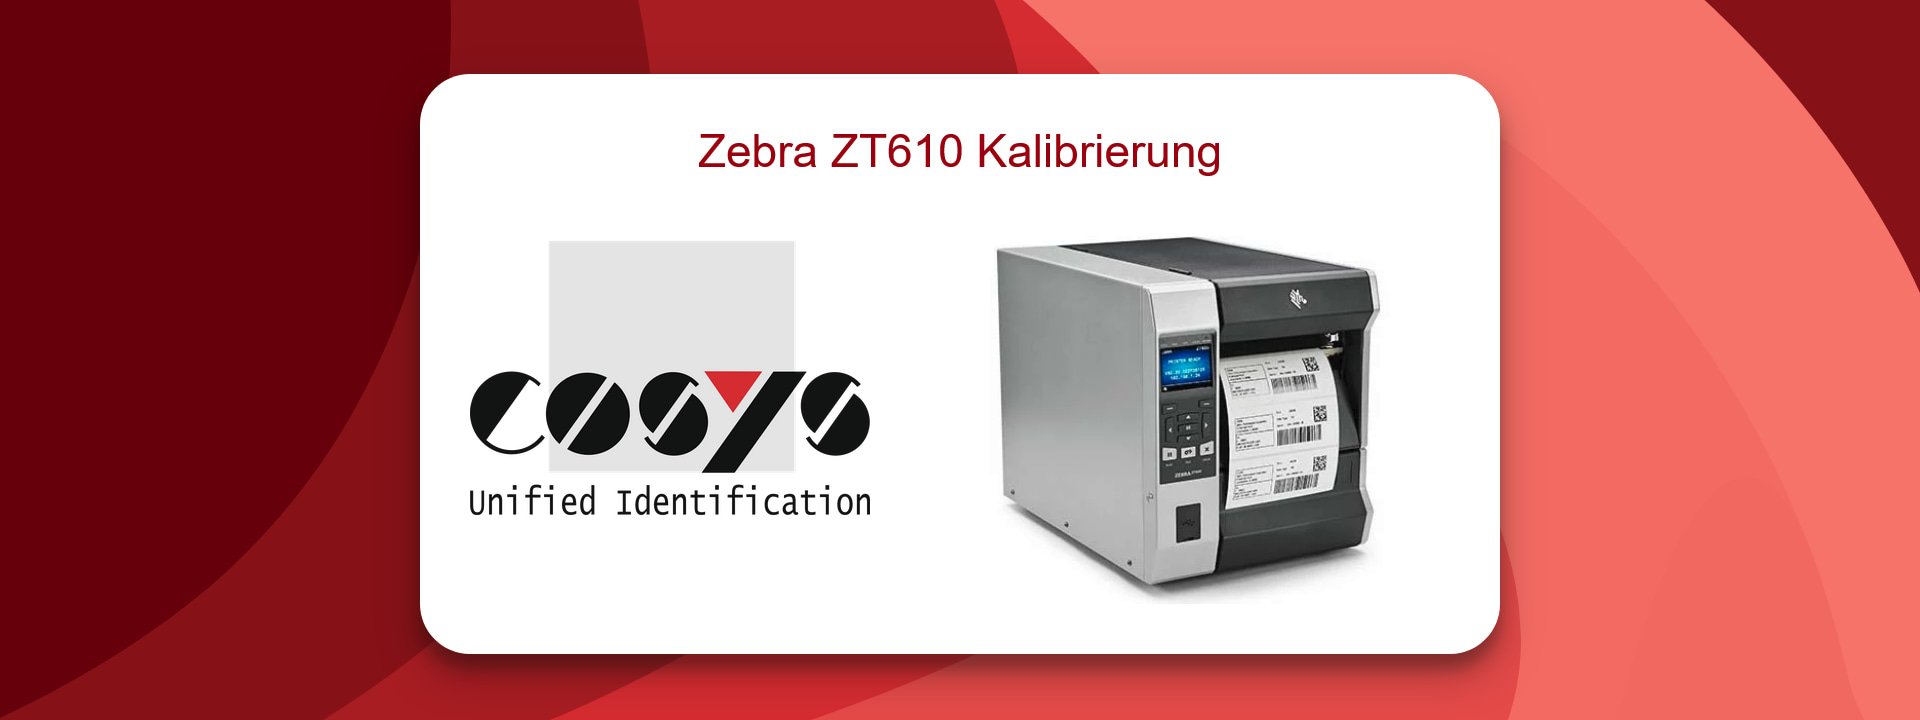 Zebra ZT610 Kalibrierung für Genauigkeit